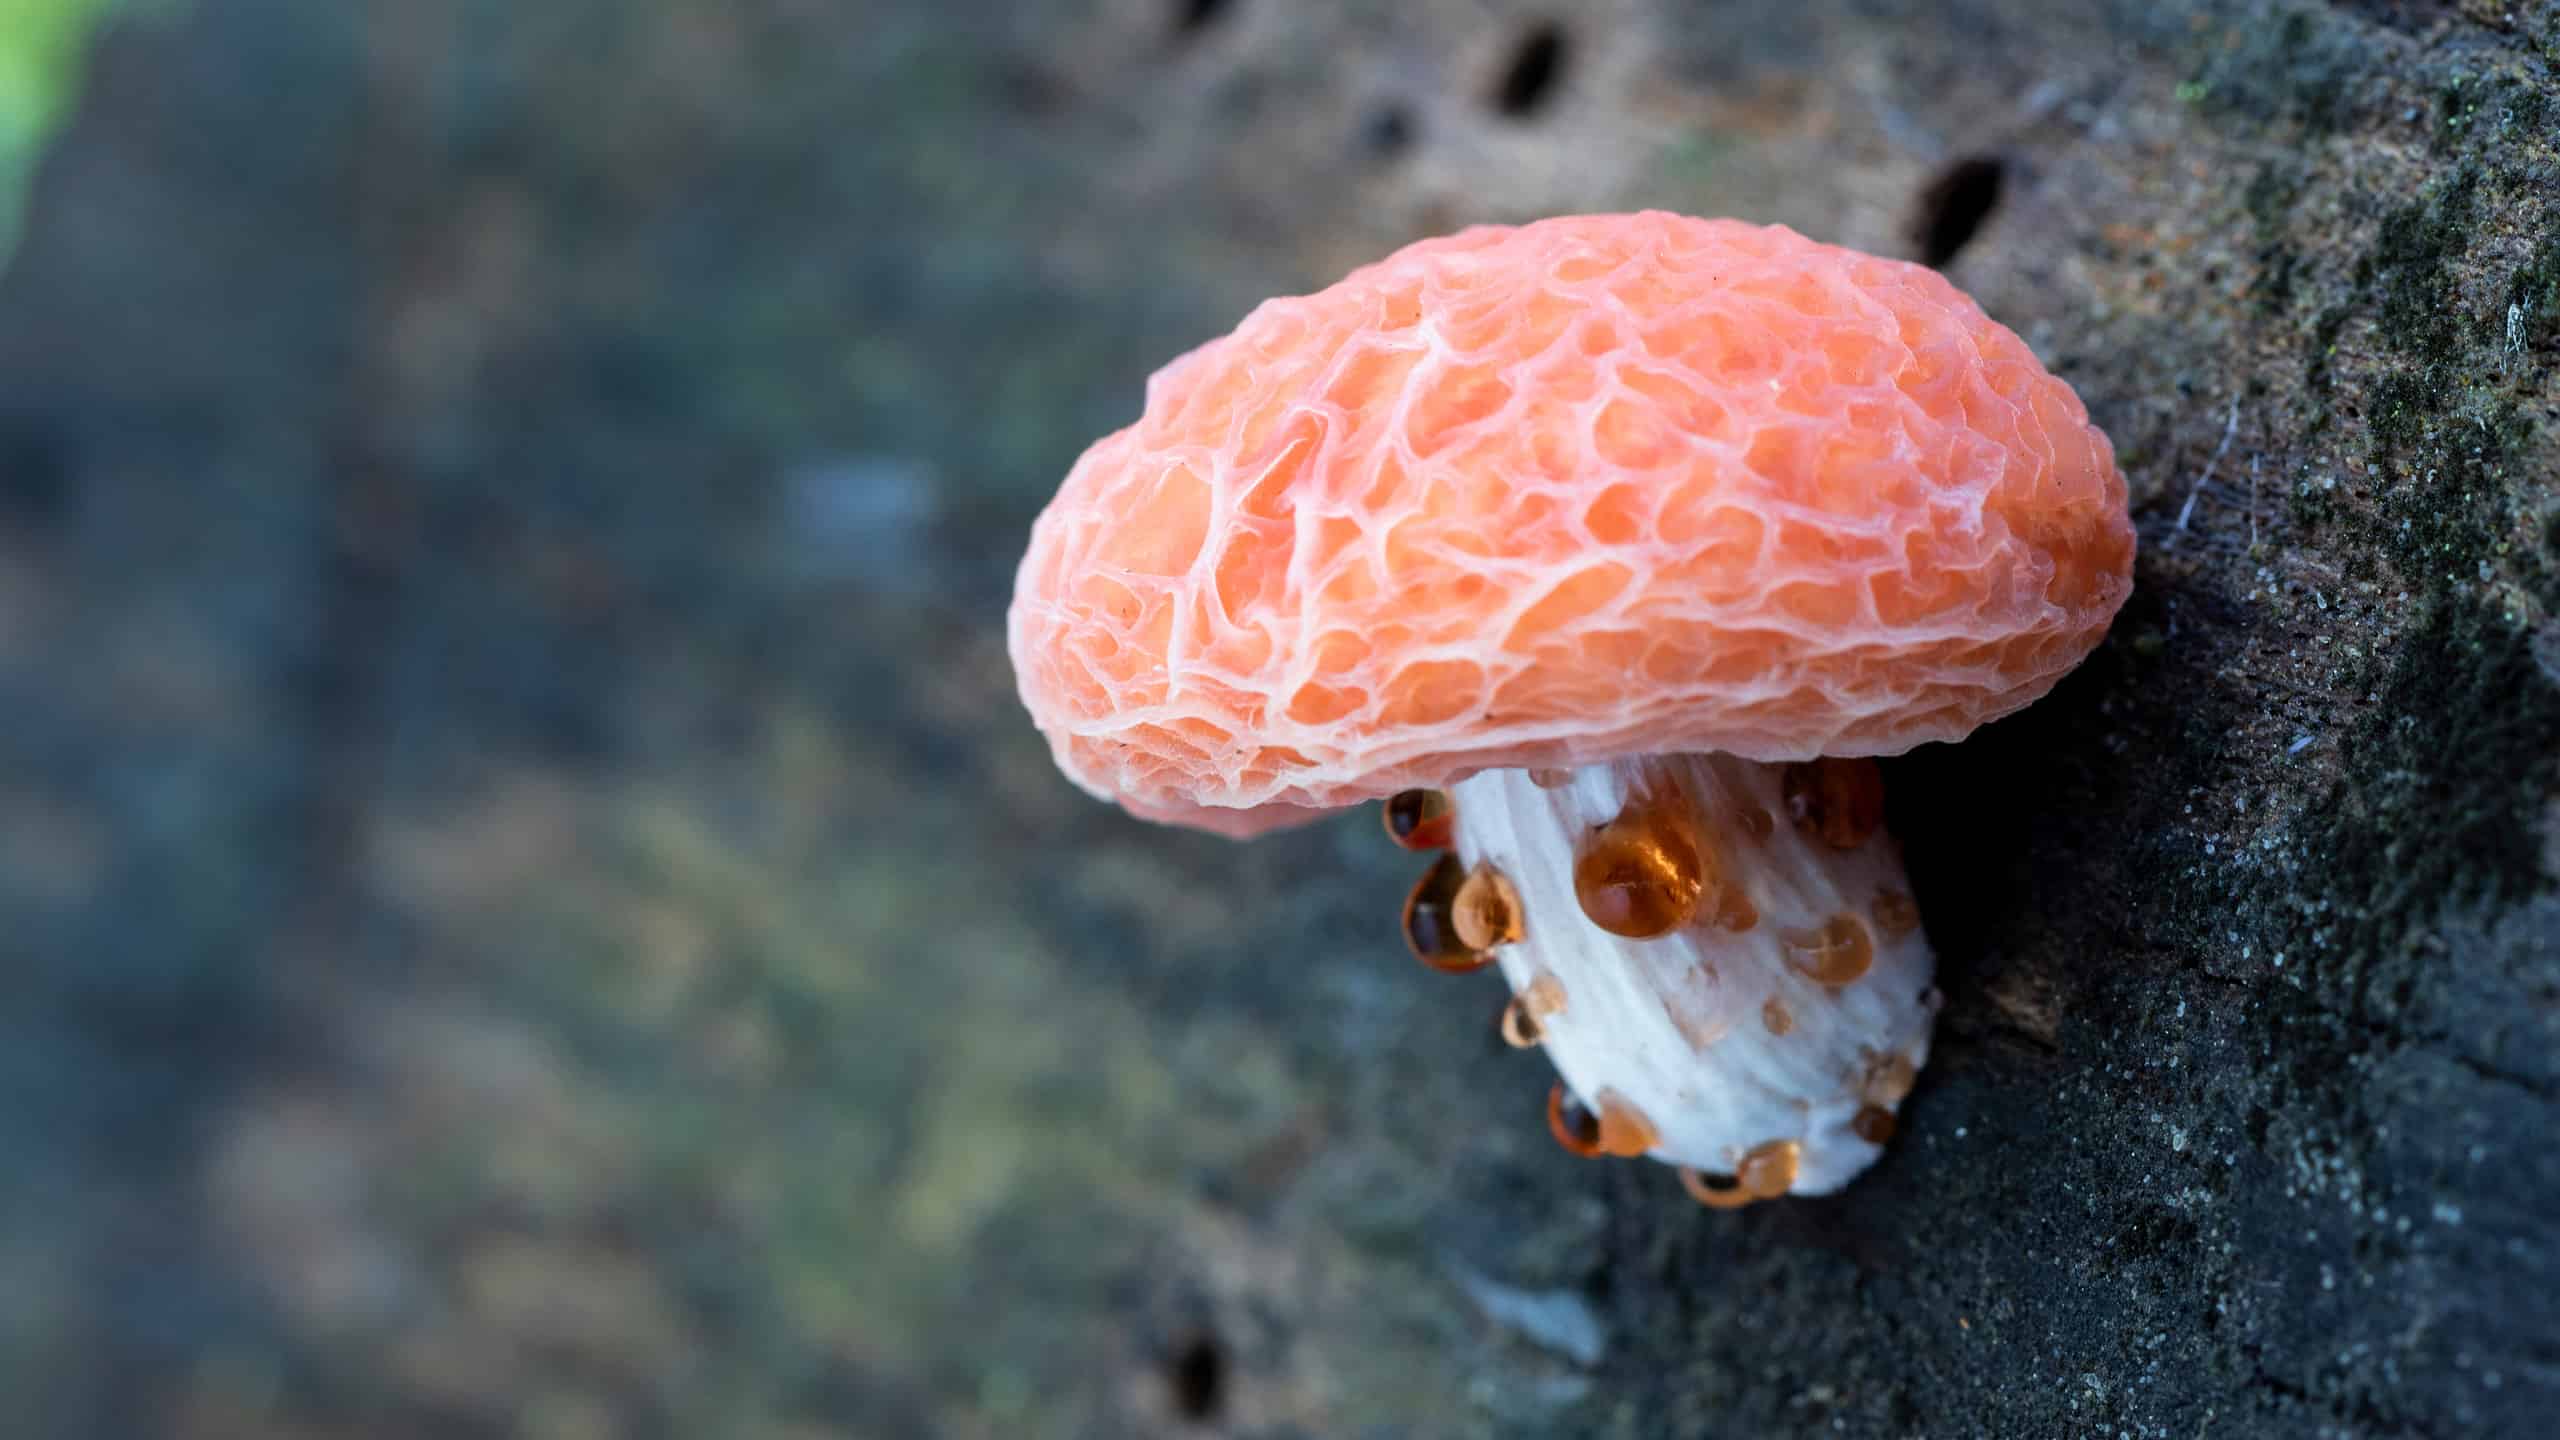 Rhodotus palmatus wrinkled peach mushroom